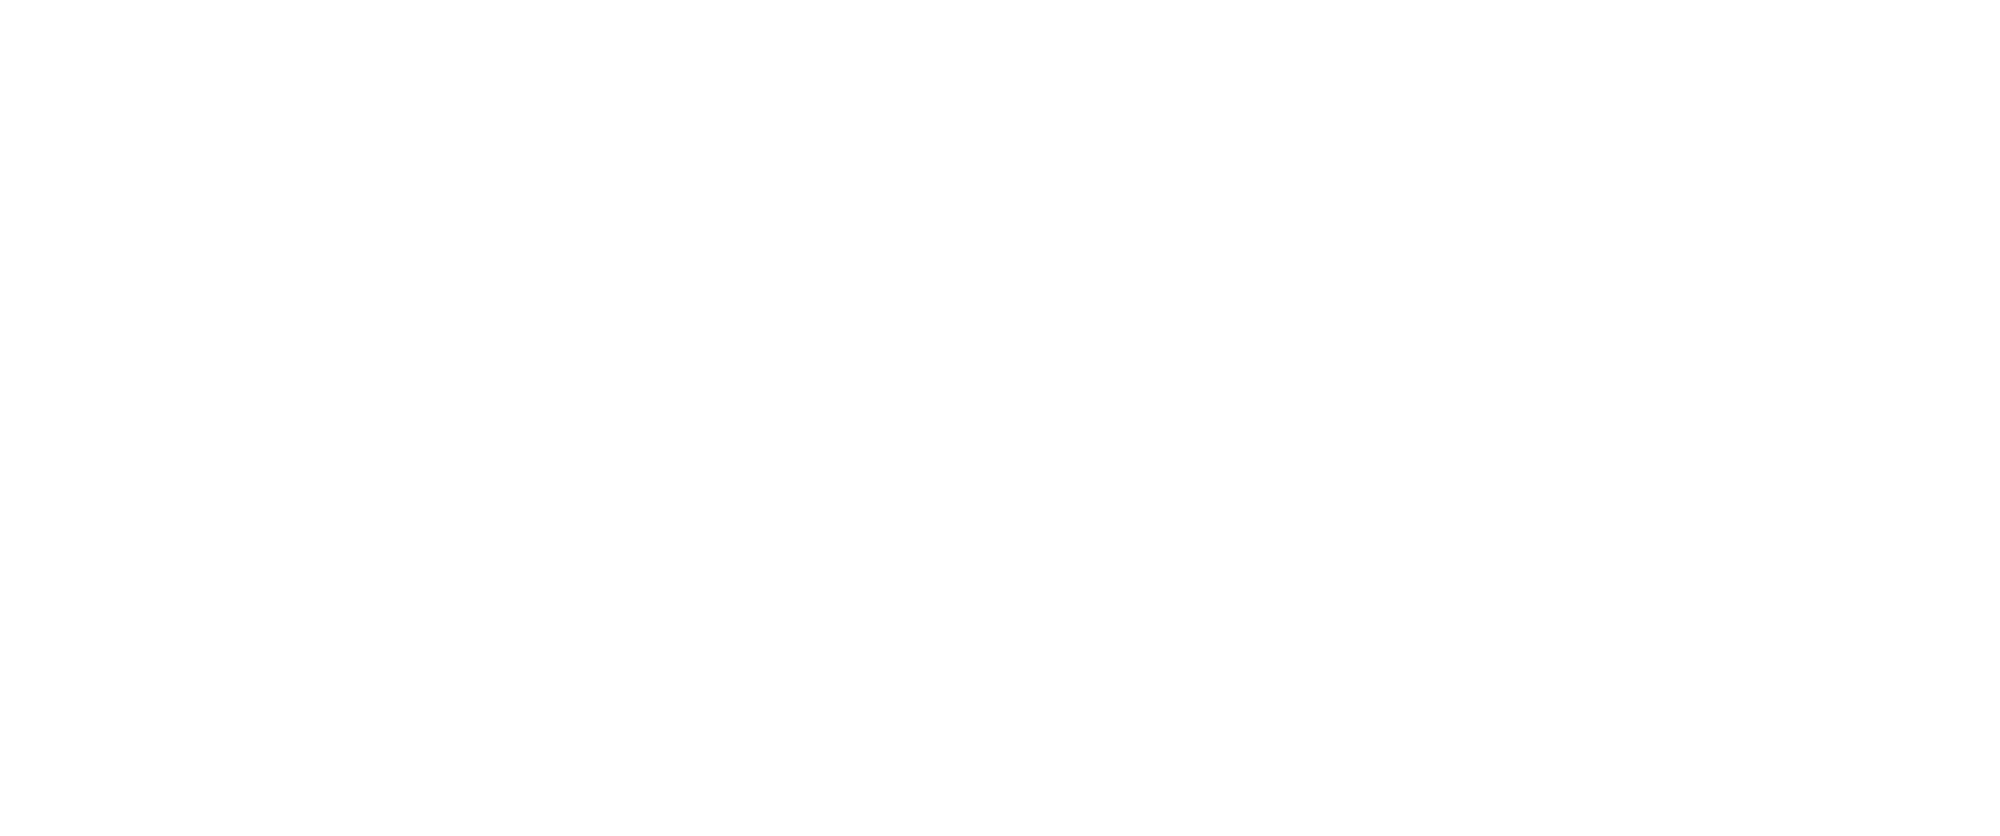 logo-biospace-white